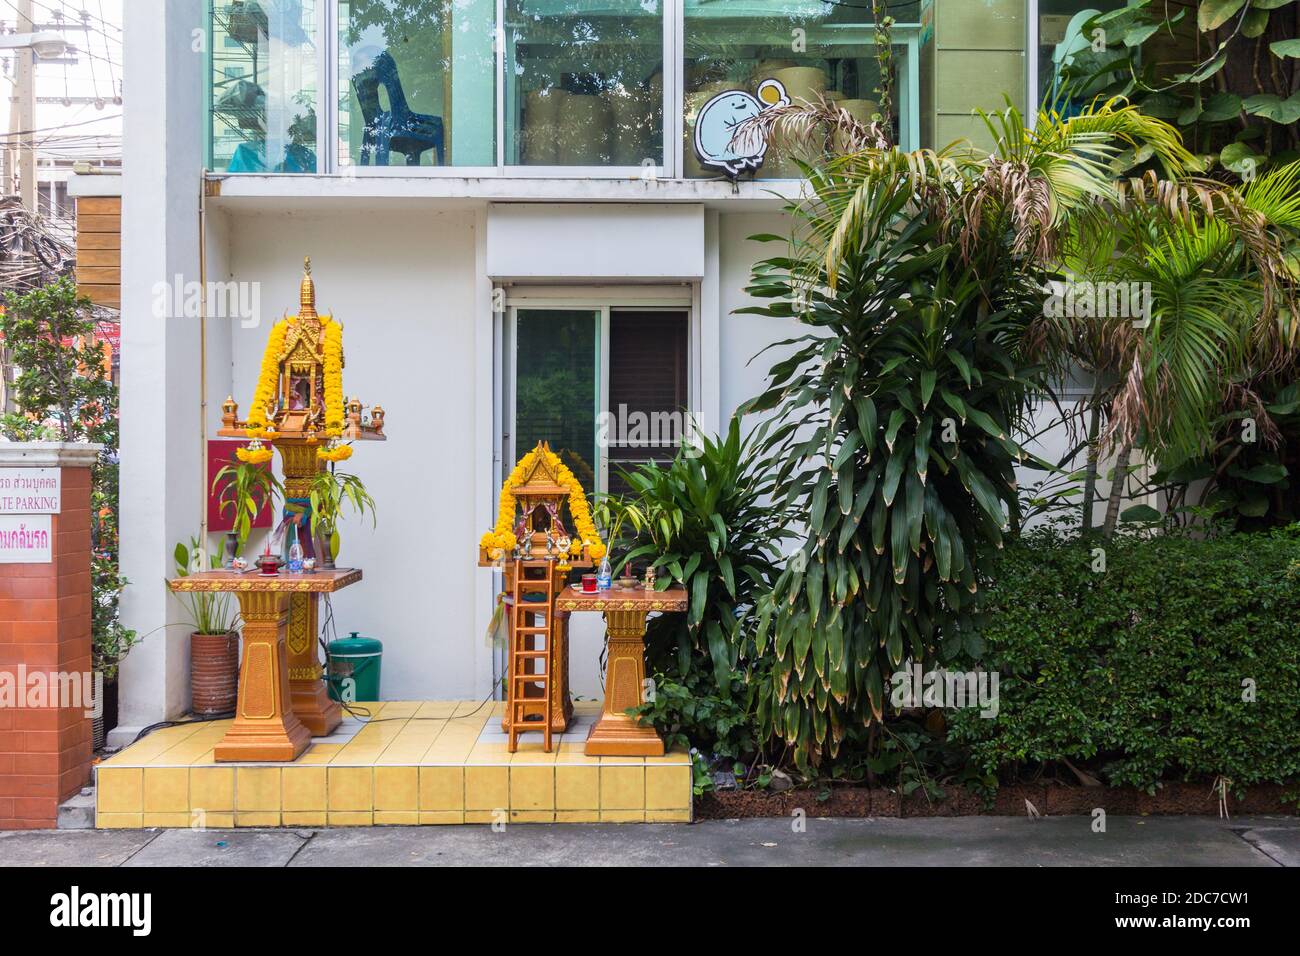 Une maison d'esprit thaïlandaise est un point de vue commun dans les rues de Thaïlande Banque D'Images